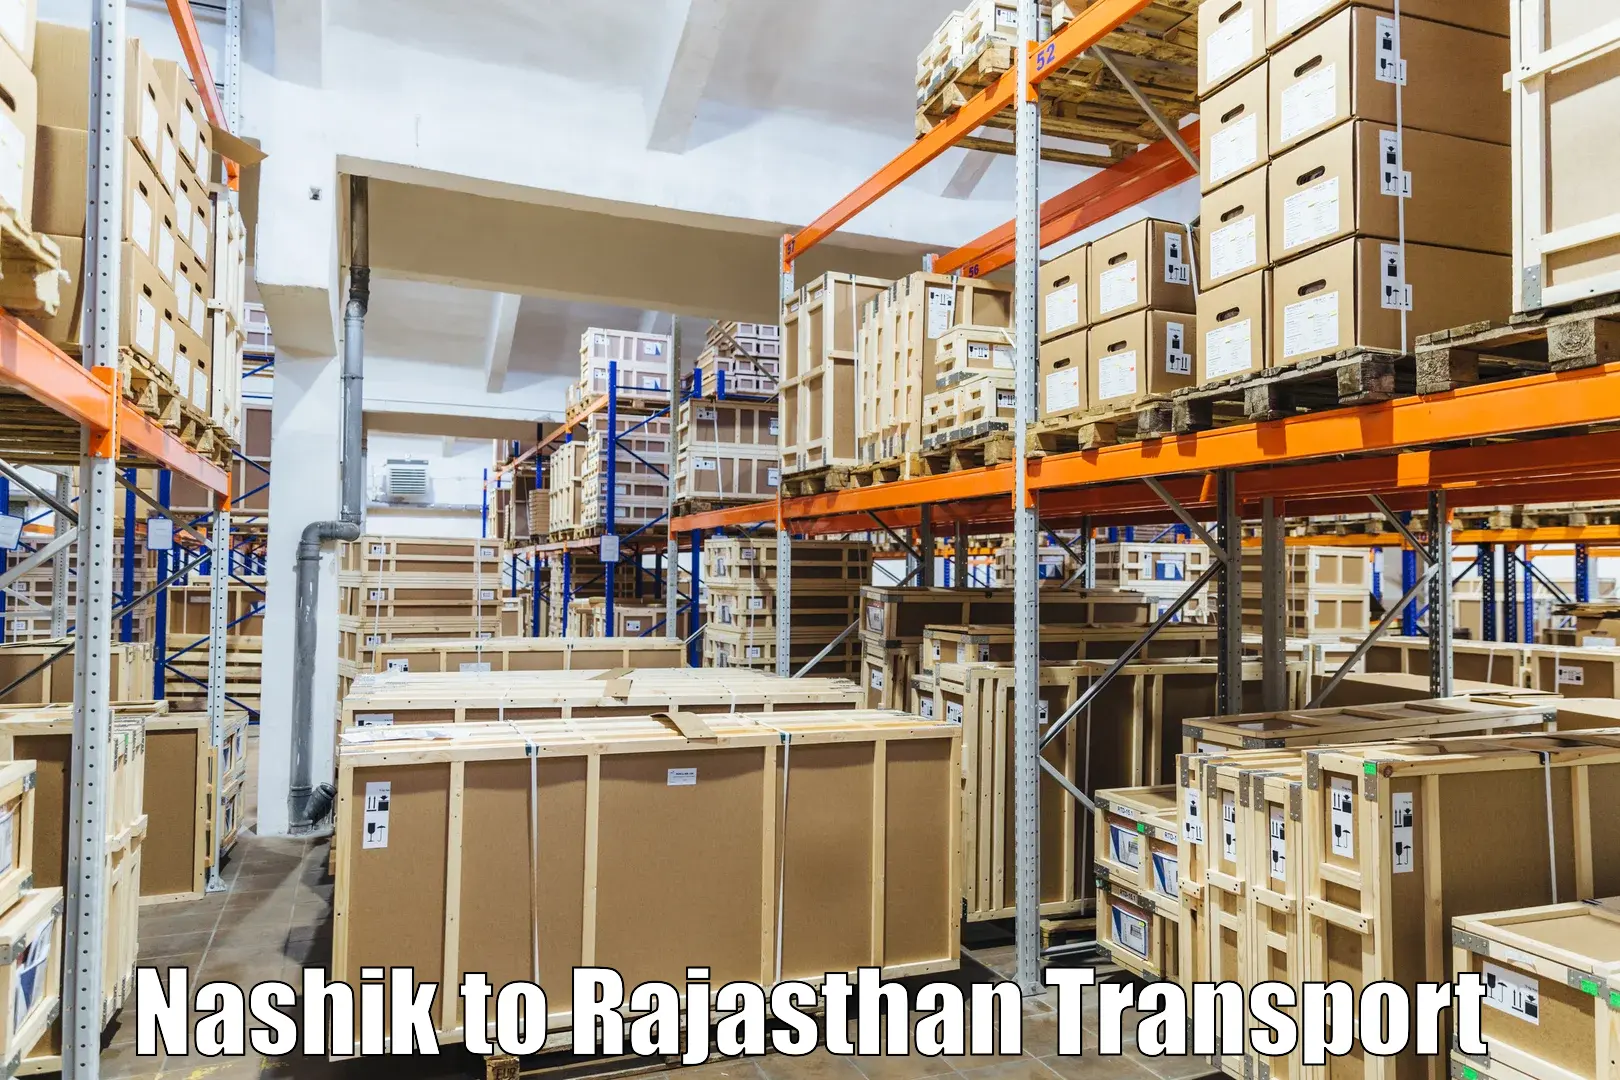 Nationwide transport services Nashik to Pratapgarh Rajasthan